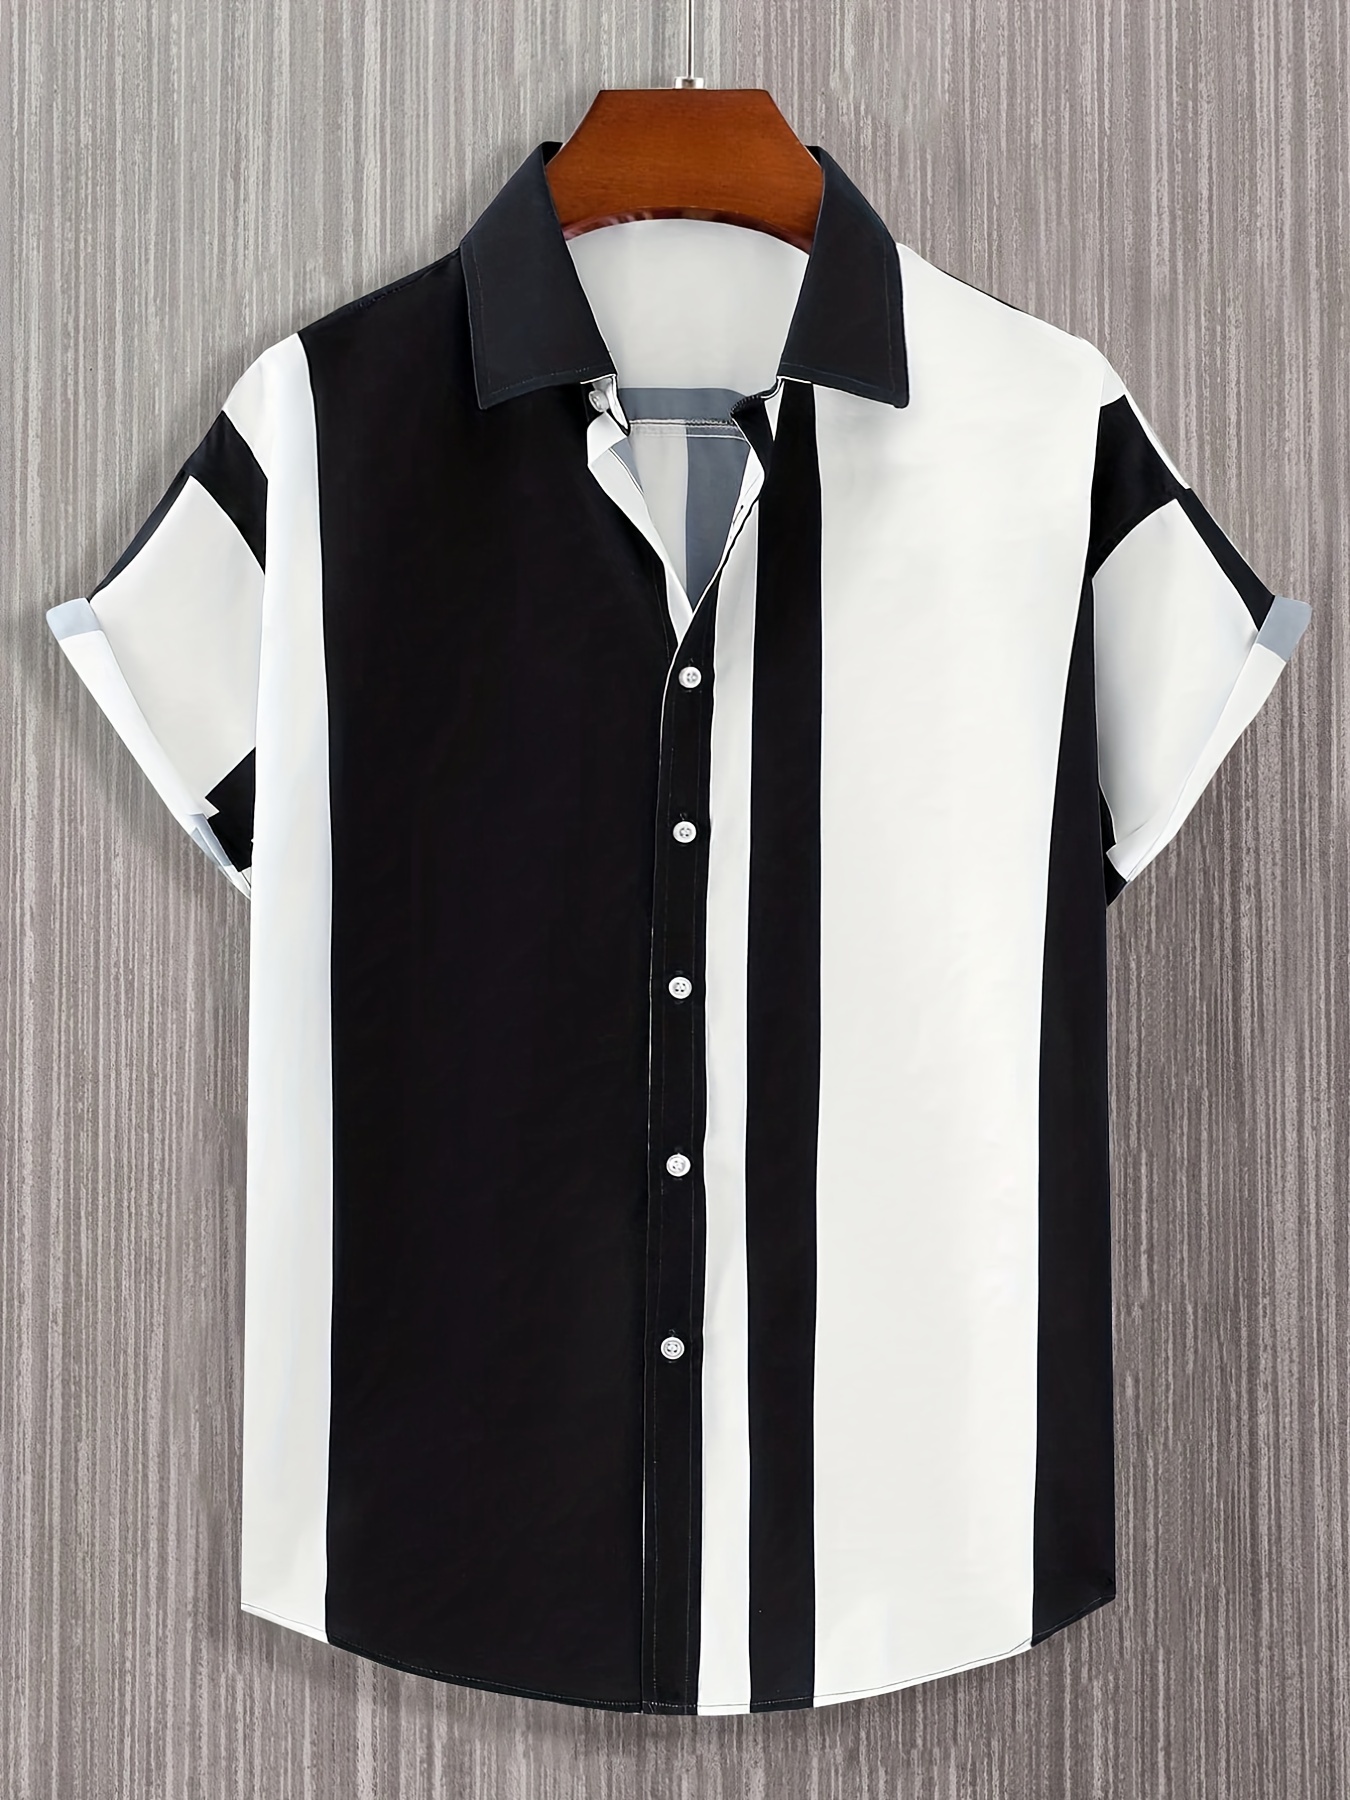  ZDFER - Camisas de vestir para hombre, con estampado de rayas,  casual, solapa, un solo botonado, playa, vacaciones, al aire libre, camisa